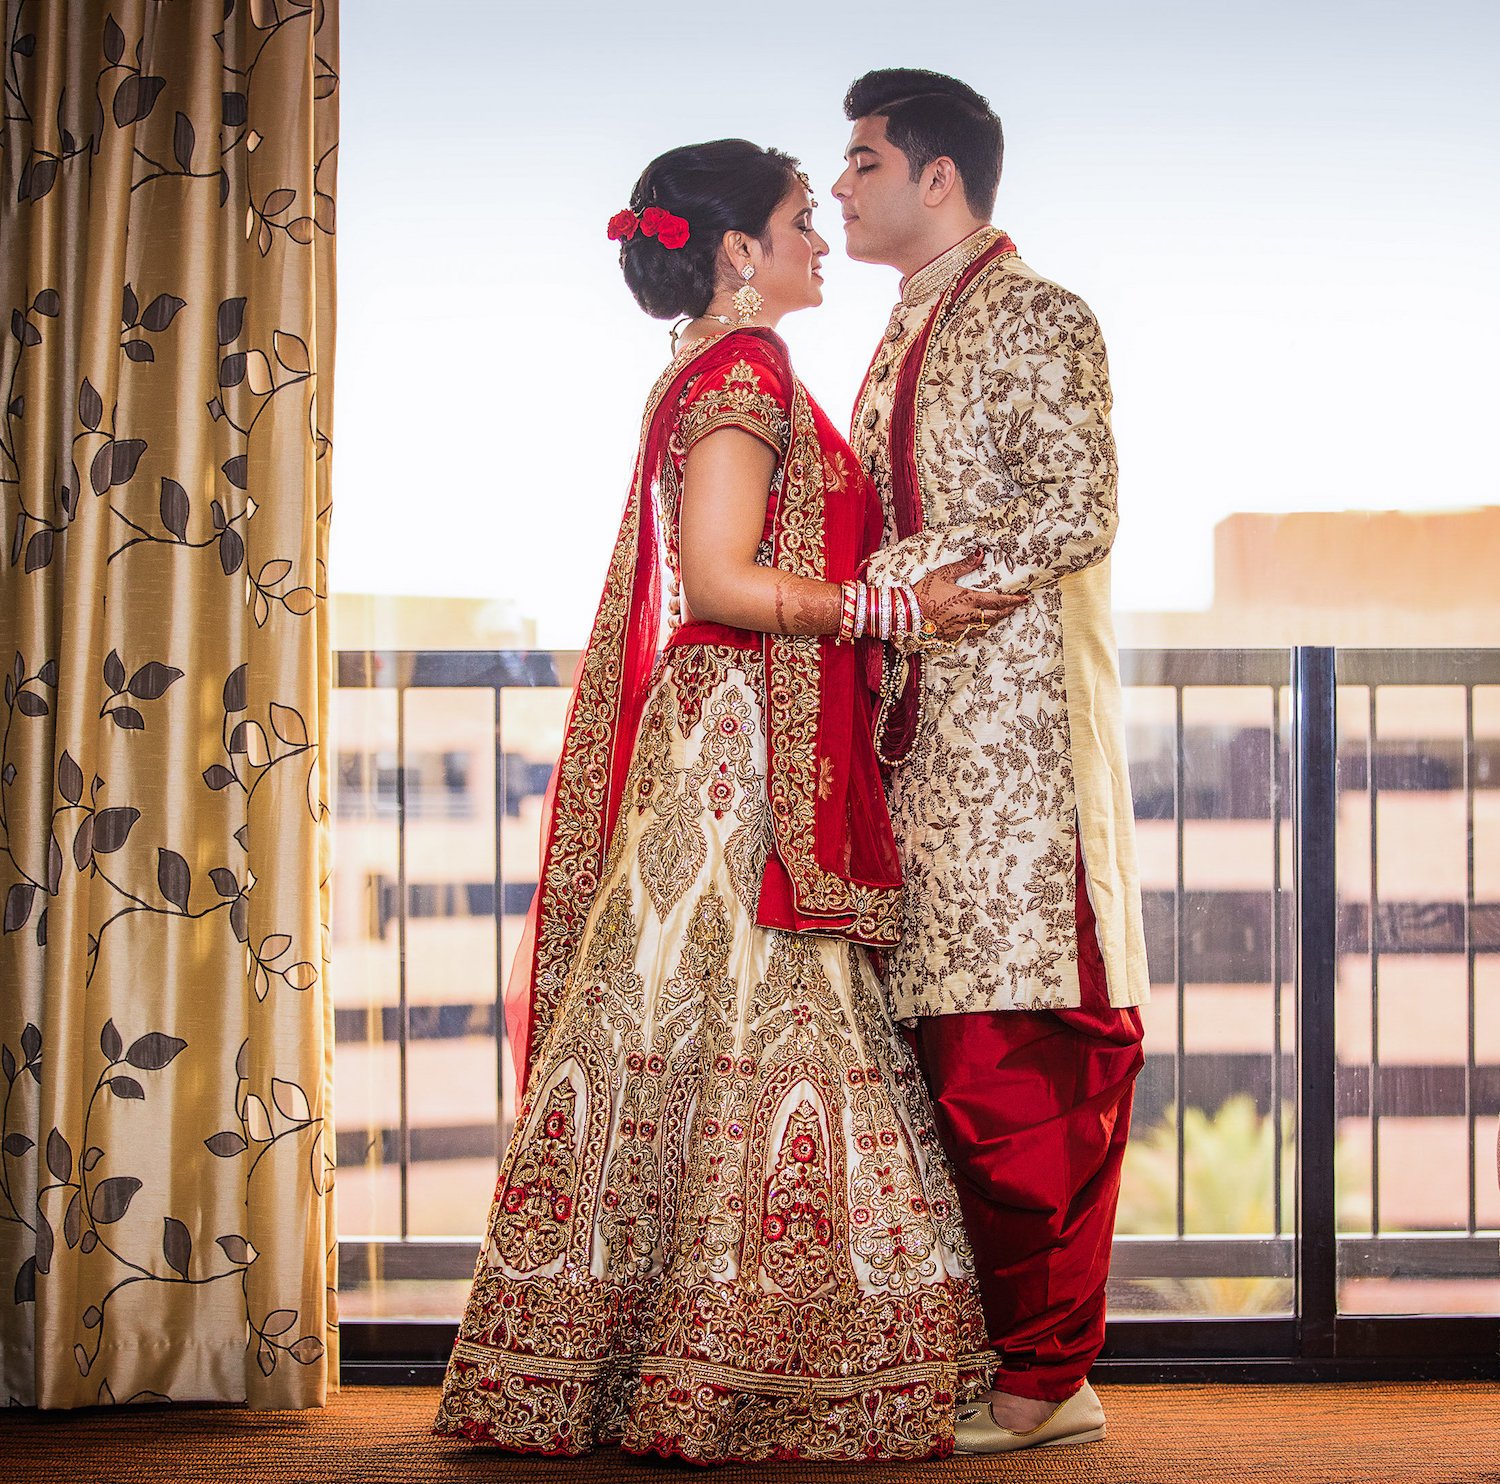 Индийские свадебные традиции | вперед к неизвестному